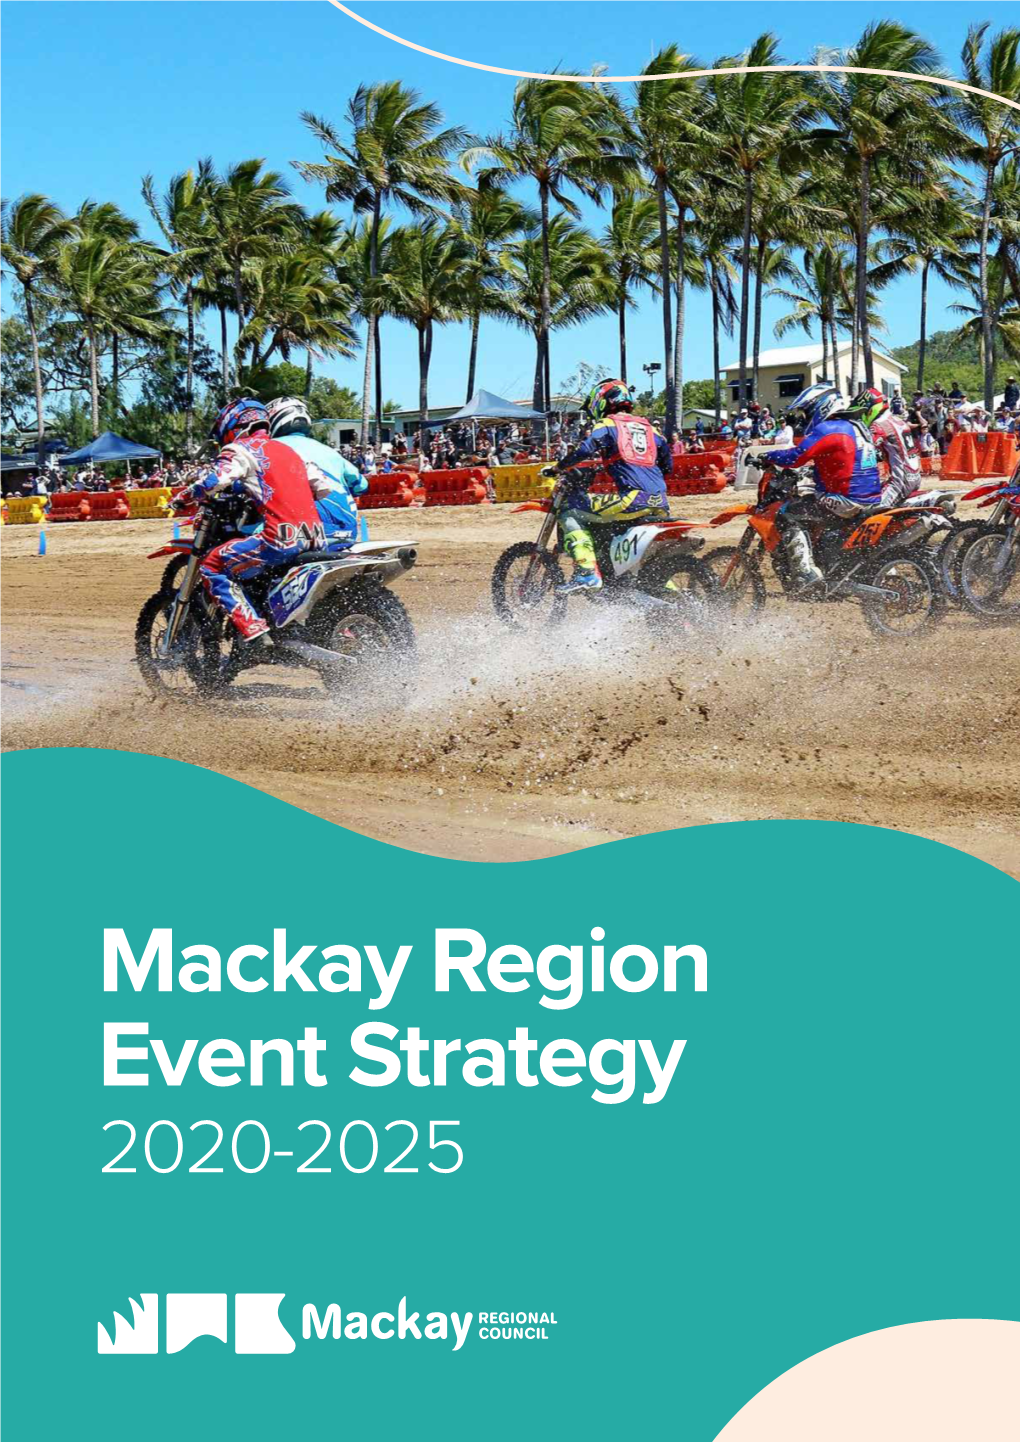 Mackay Region Events Strategy 2020-2025